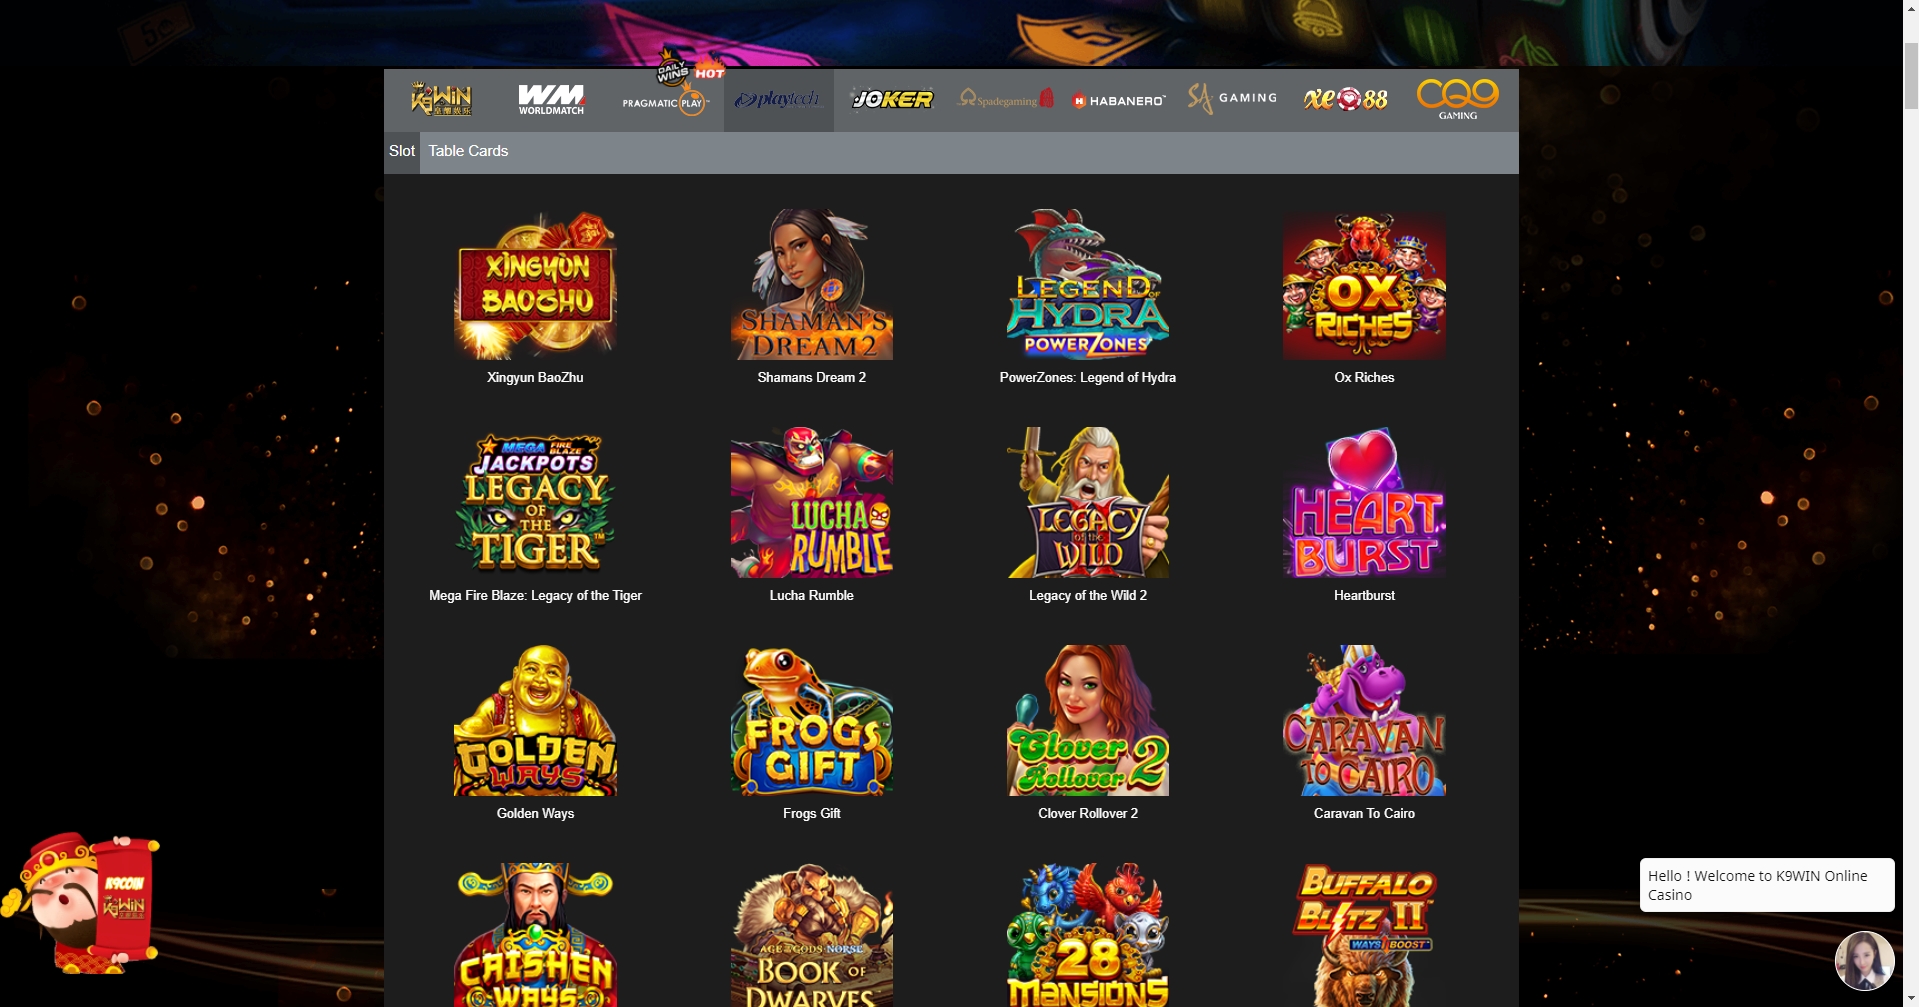 K9WIN Online Casino Games